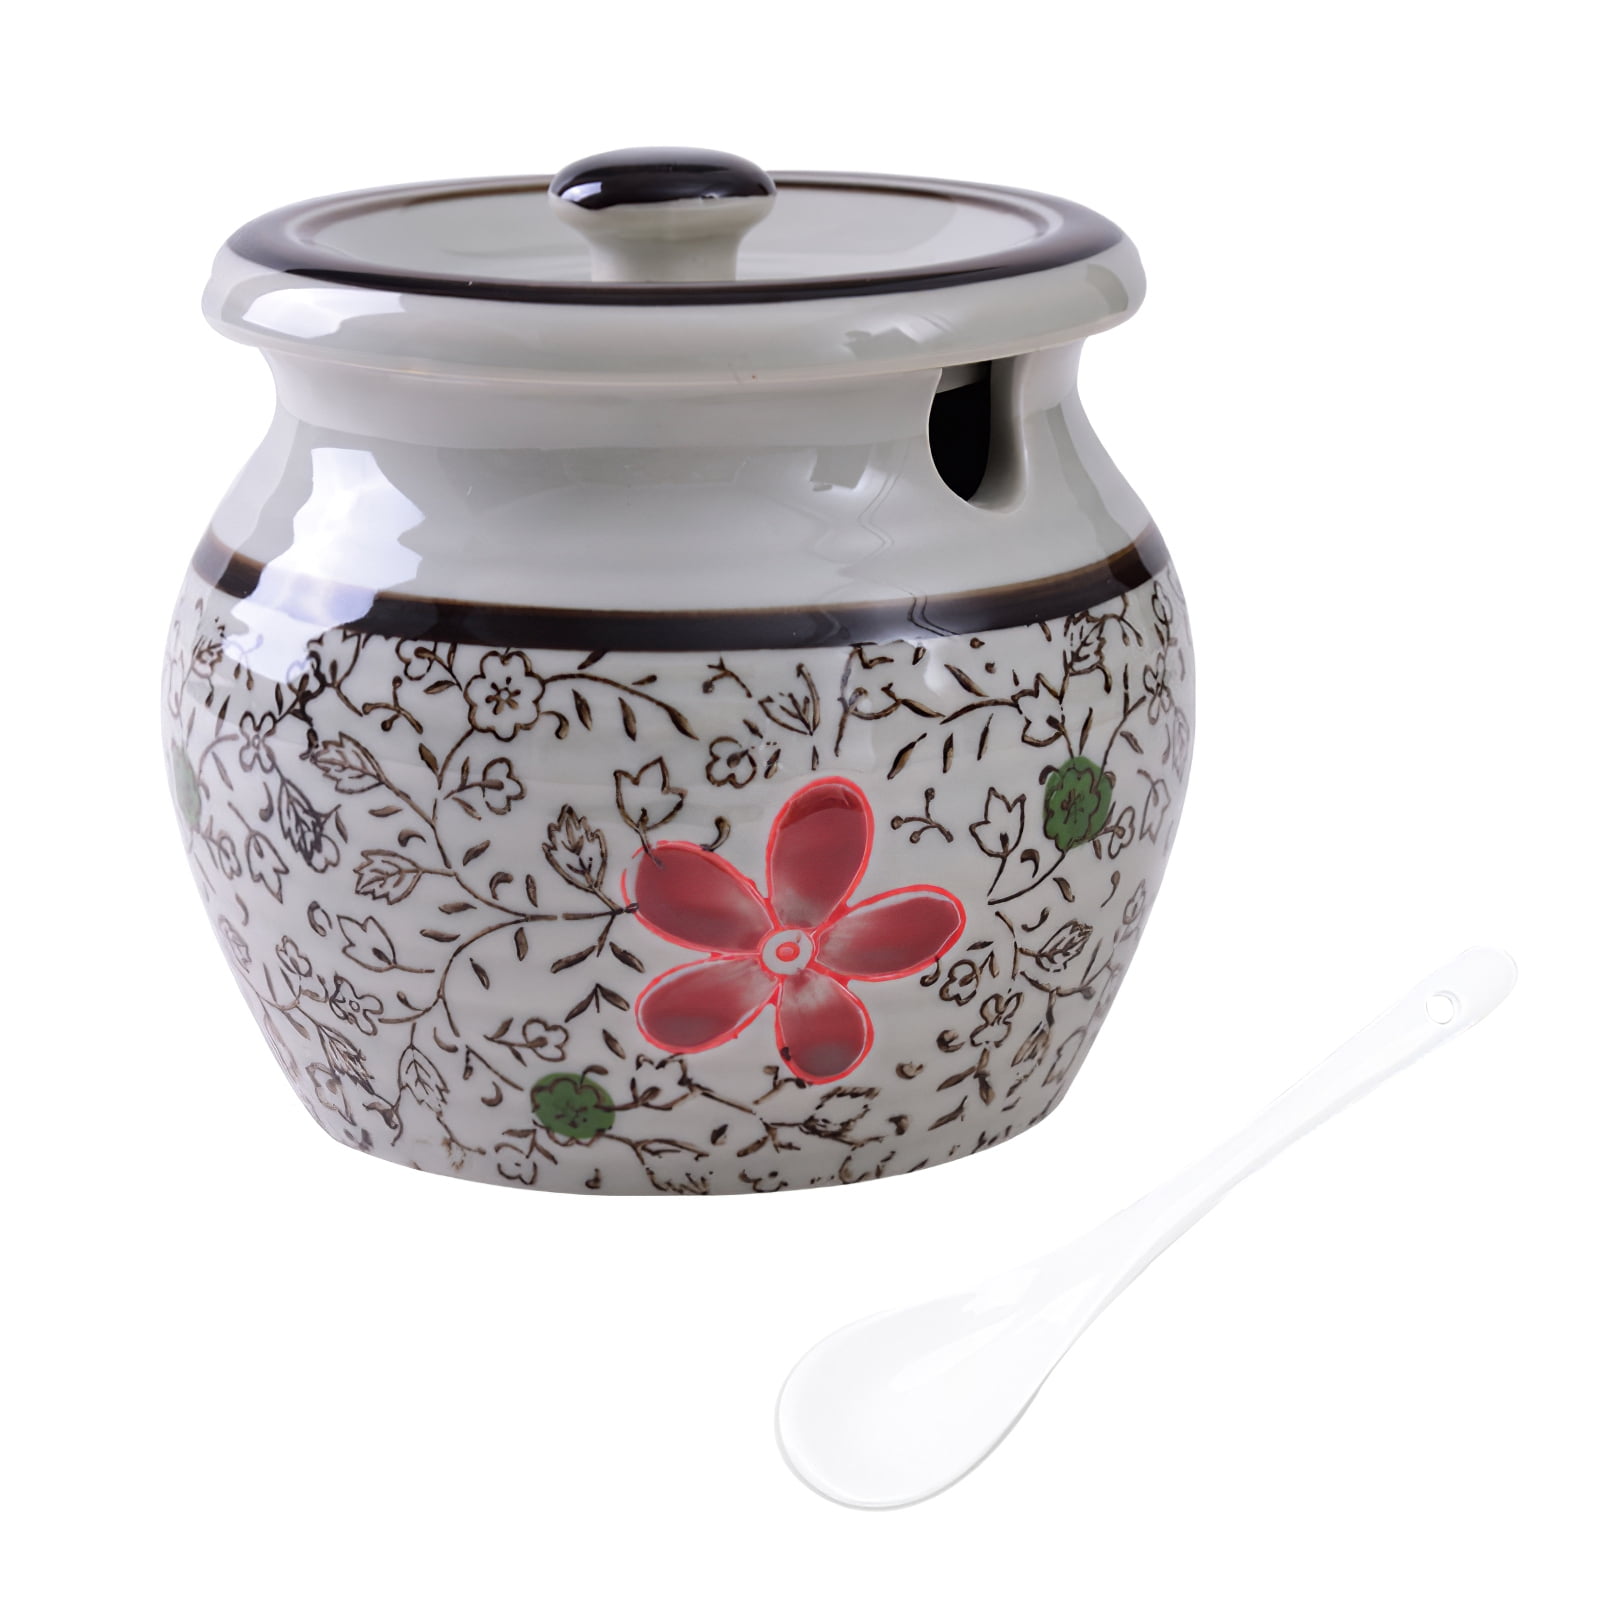 Ceramic Japanese Hand Painted Flower Sugar Bowl Seasoning Jar with Lid Spoon